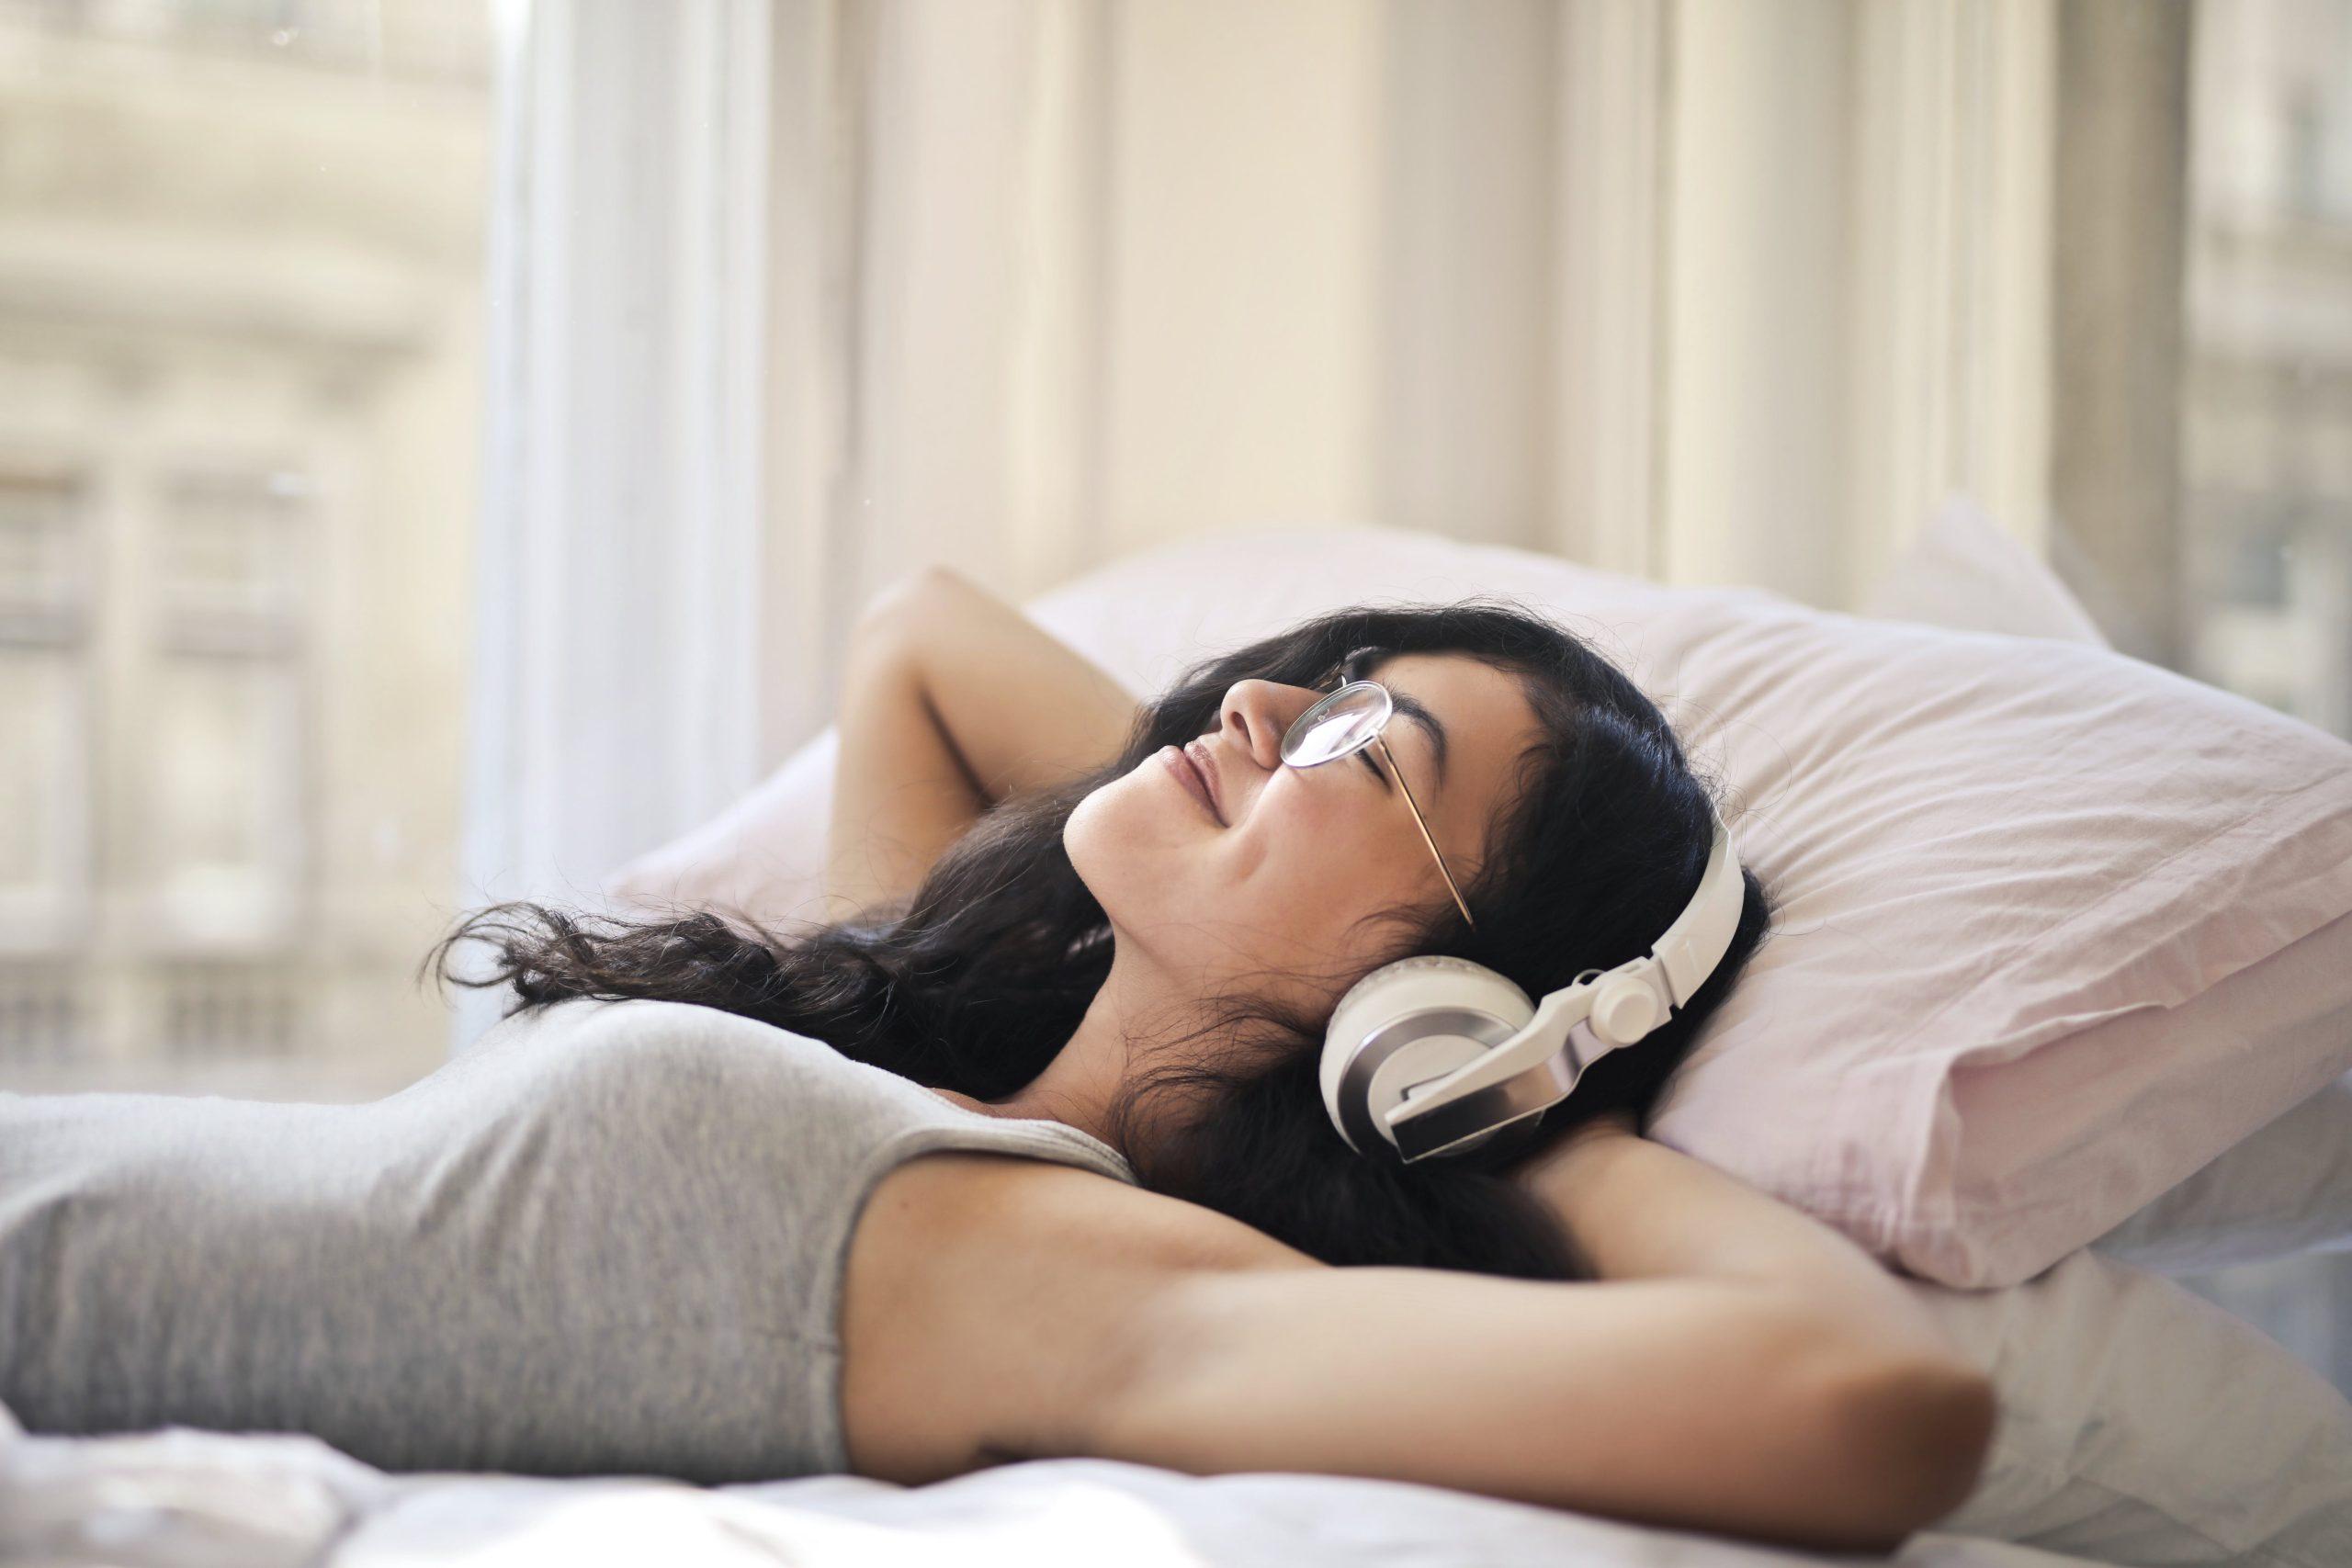 Giấc ngủ ngon và đều đặn hơn ở những người nghe nhạc thư giãn khoảng 40-45 phút trước khi đi ngủ. (Nguồn: Internet)